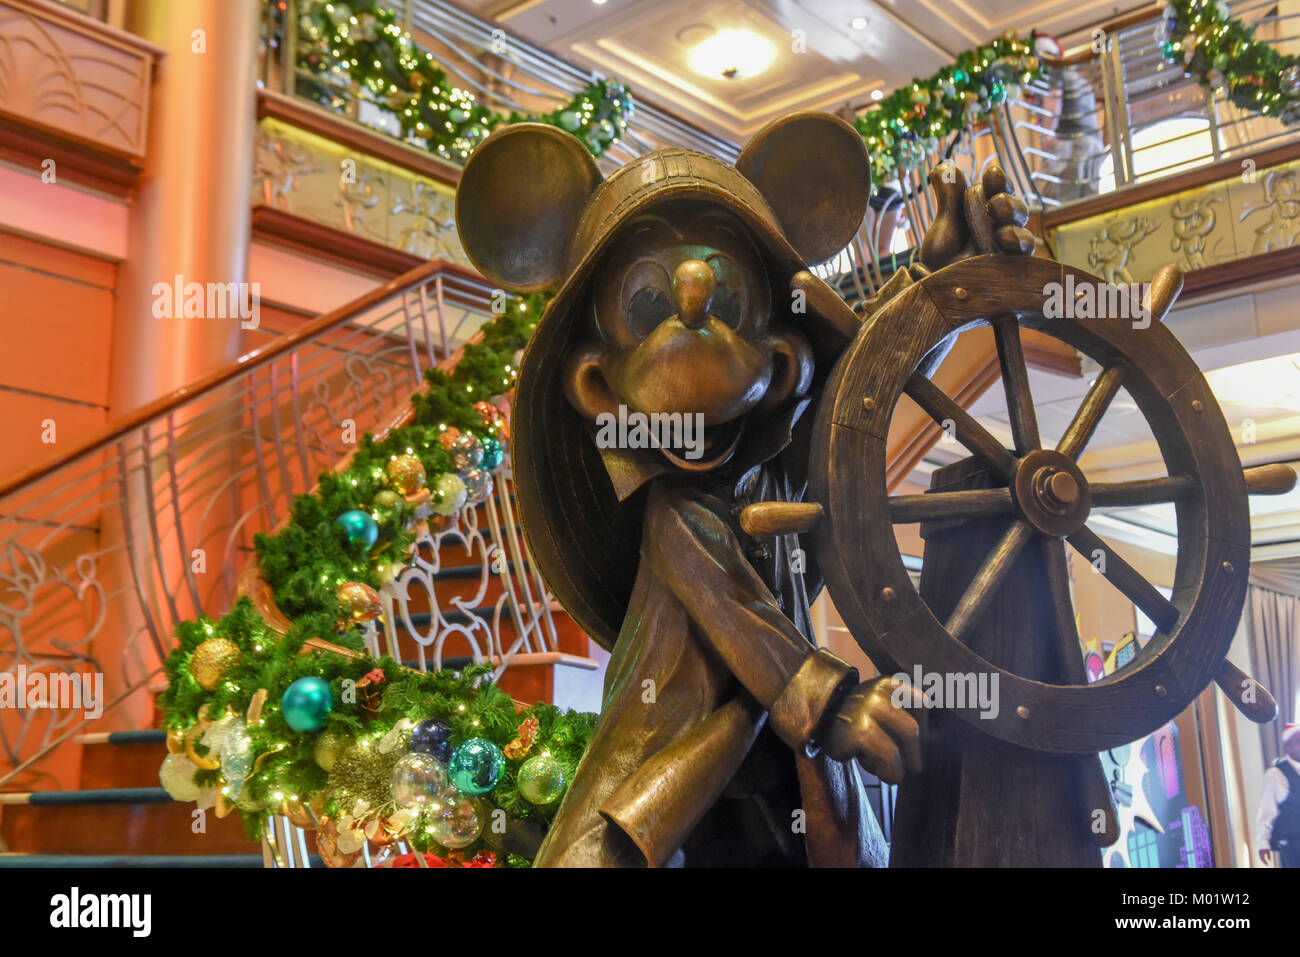 Bateau de croisière Disney - Disney Magic - Caraïbes / maison de vacances aux Bahamas Croisière de Noël - Mickey Mouse sur Disney Cruise Line Banque D'Images